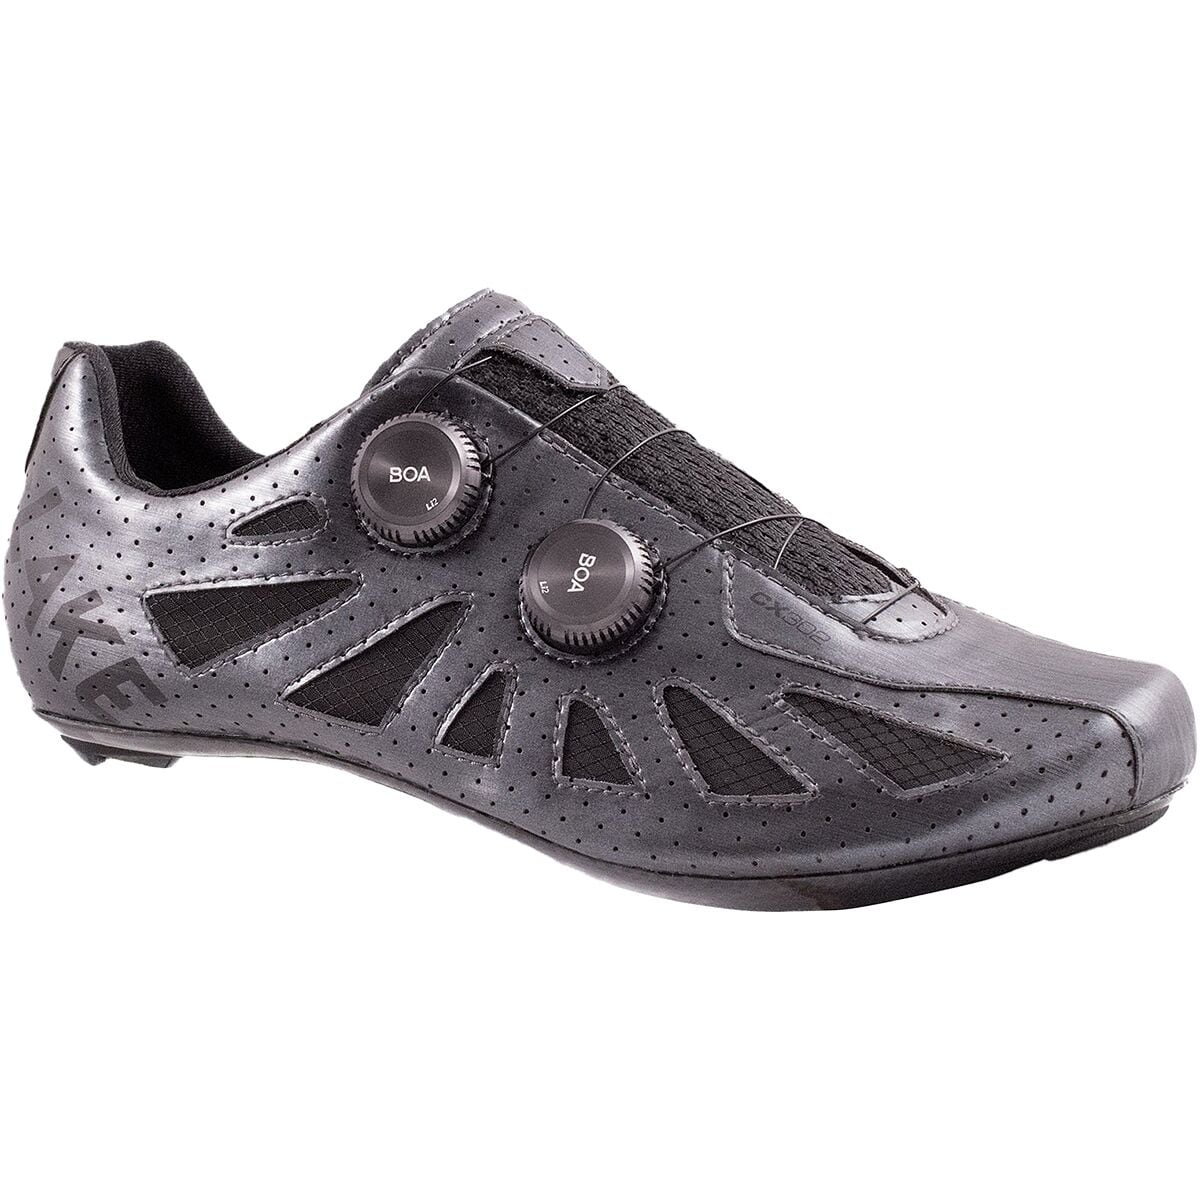 Lake CX302 Extra Wide Cycling Shoe - Men's Metal/Black, 43.5